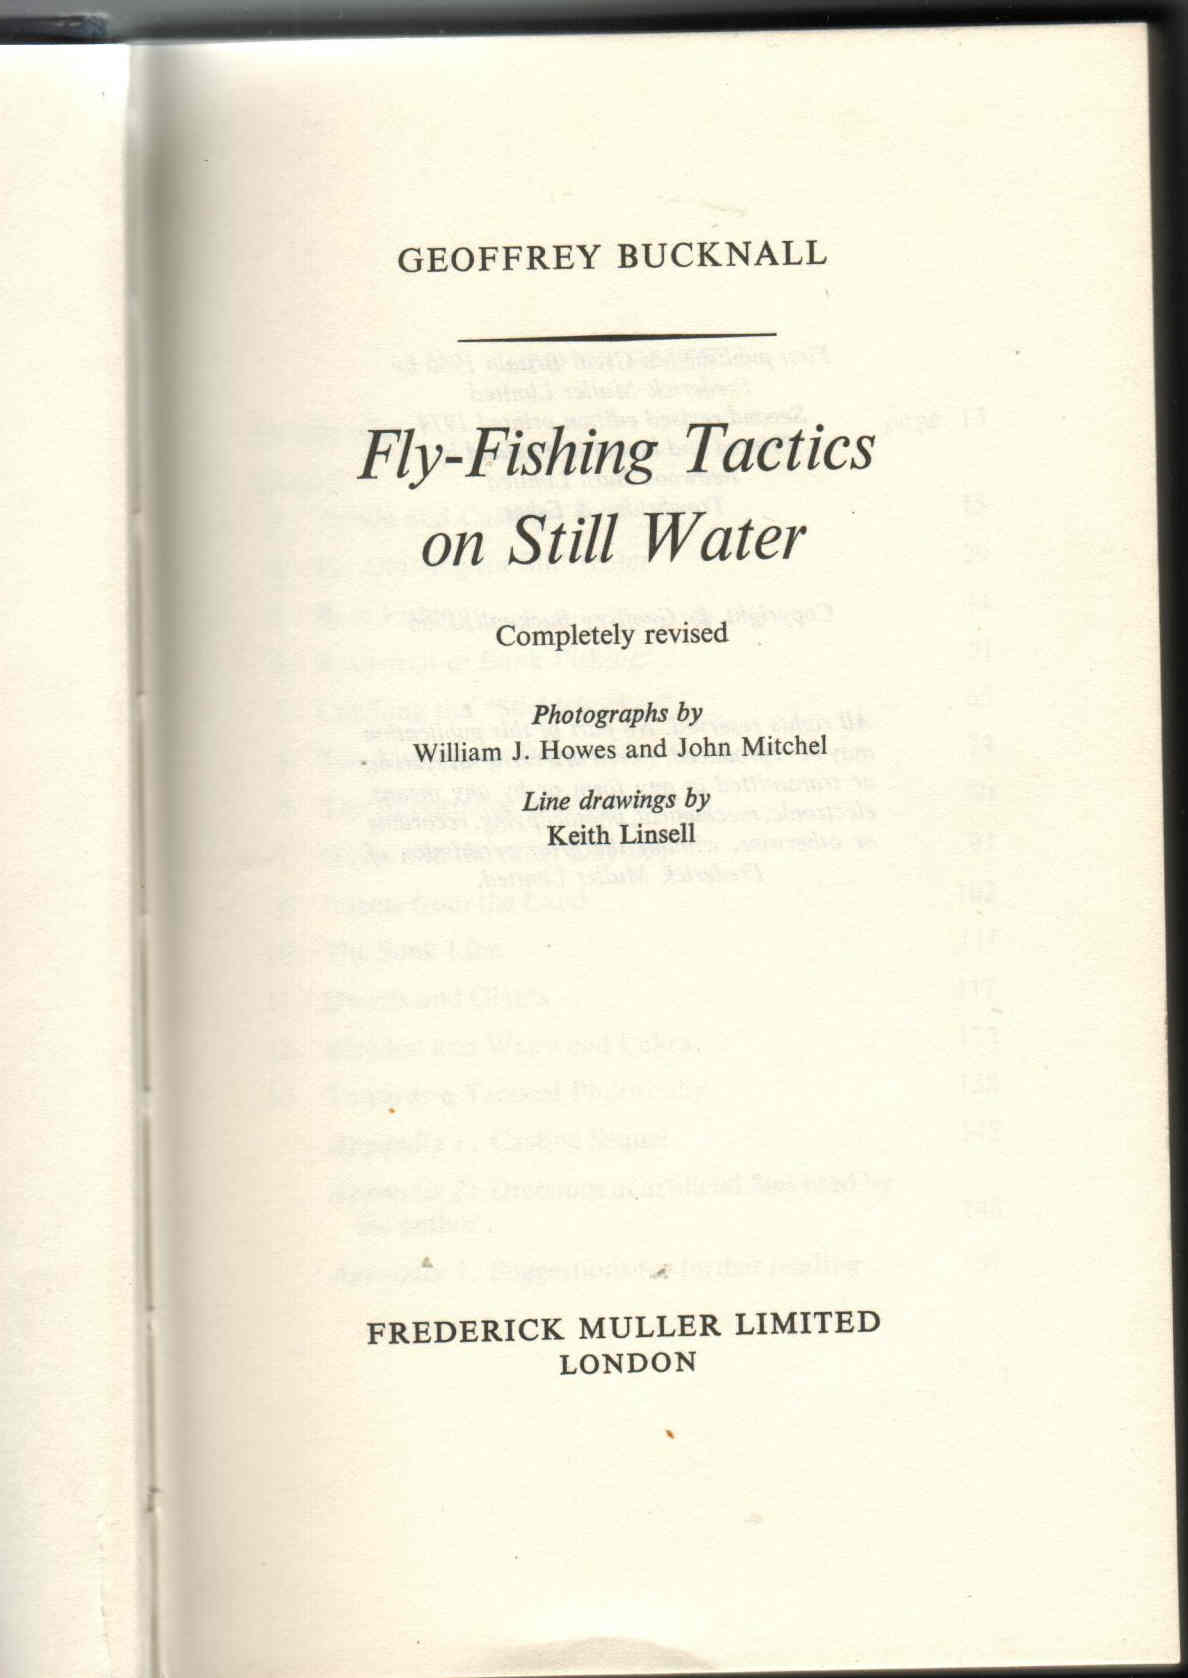 FLY FISHING TACTICS ON STILL WATER by Geoffrey Bucknall